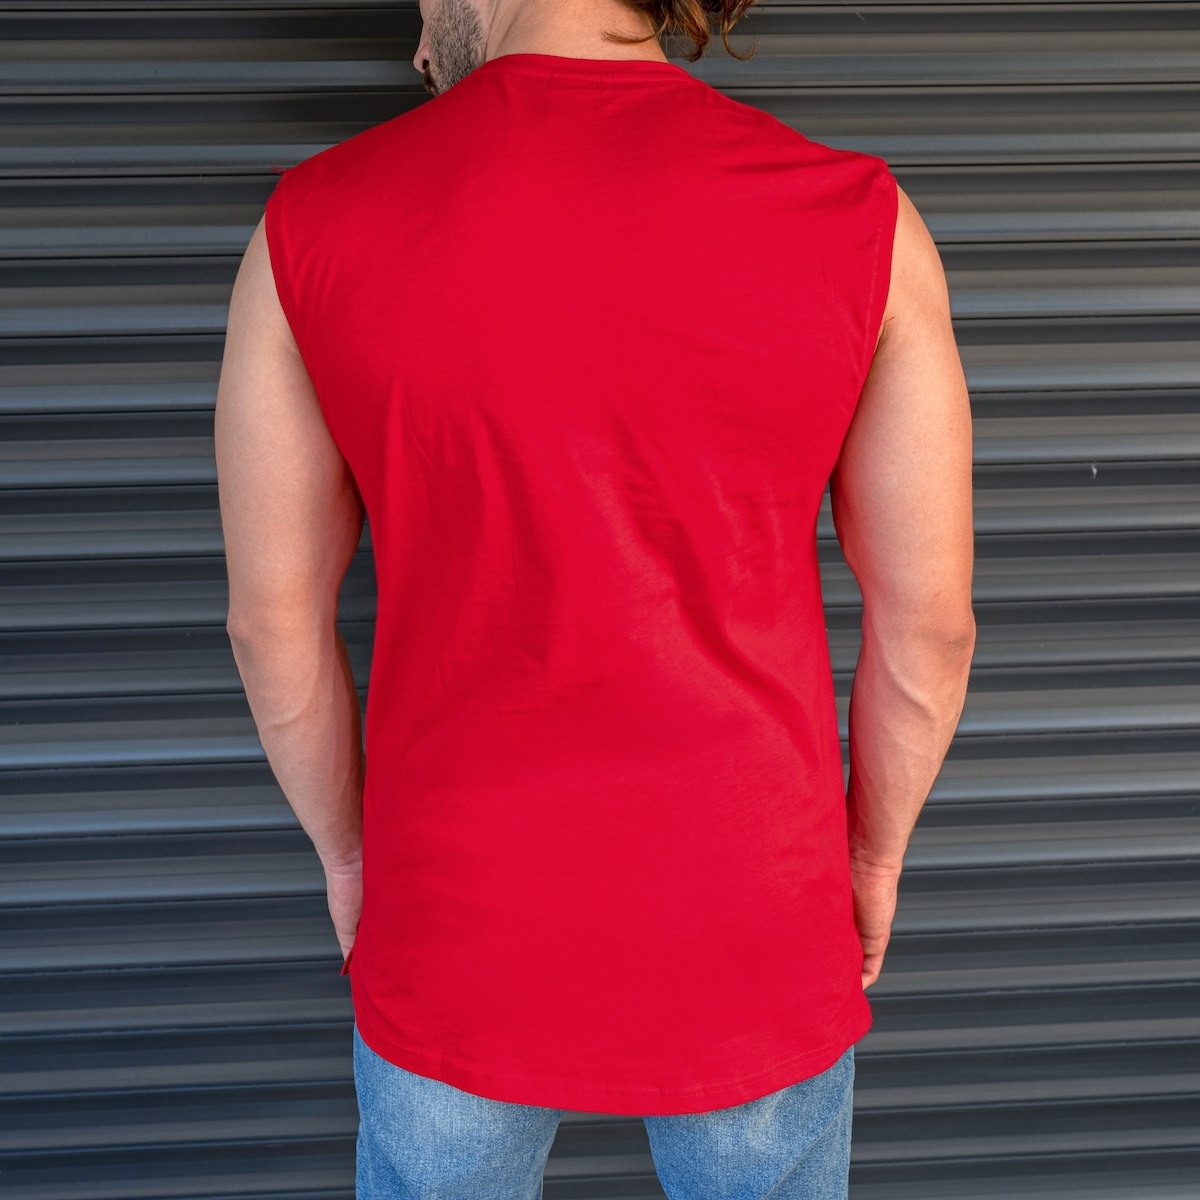 Men's Basic Sleeveless T-Shirt In Red - 3